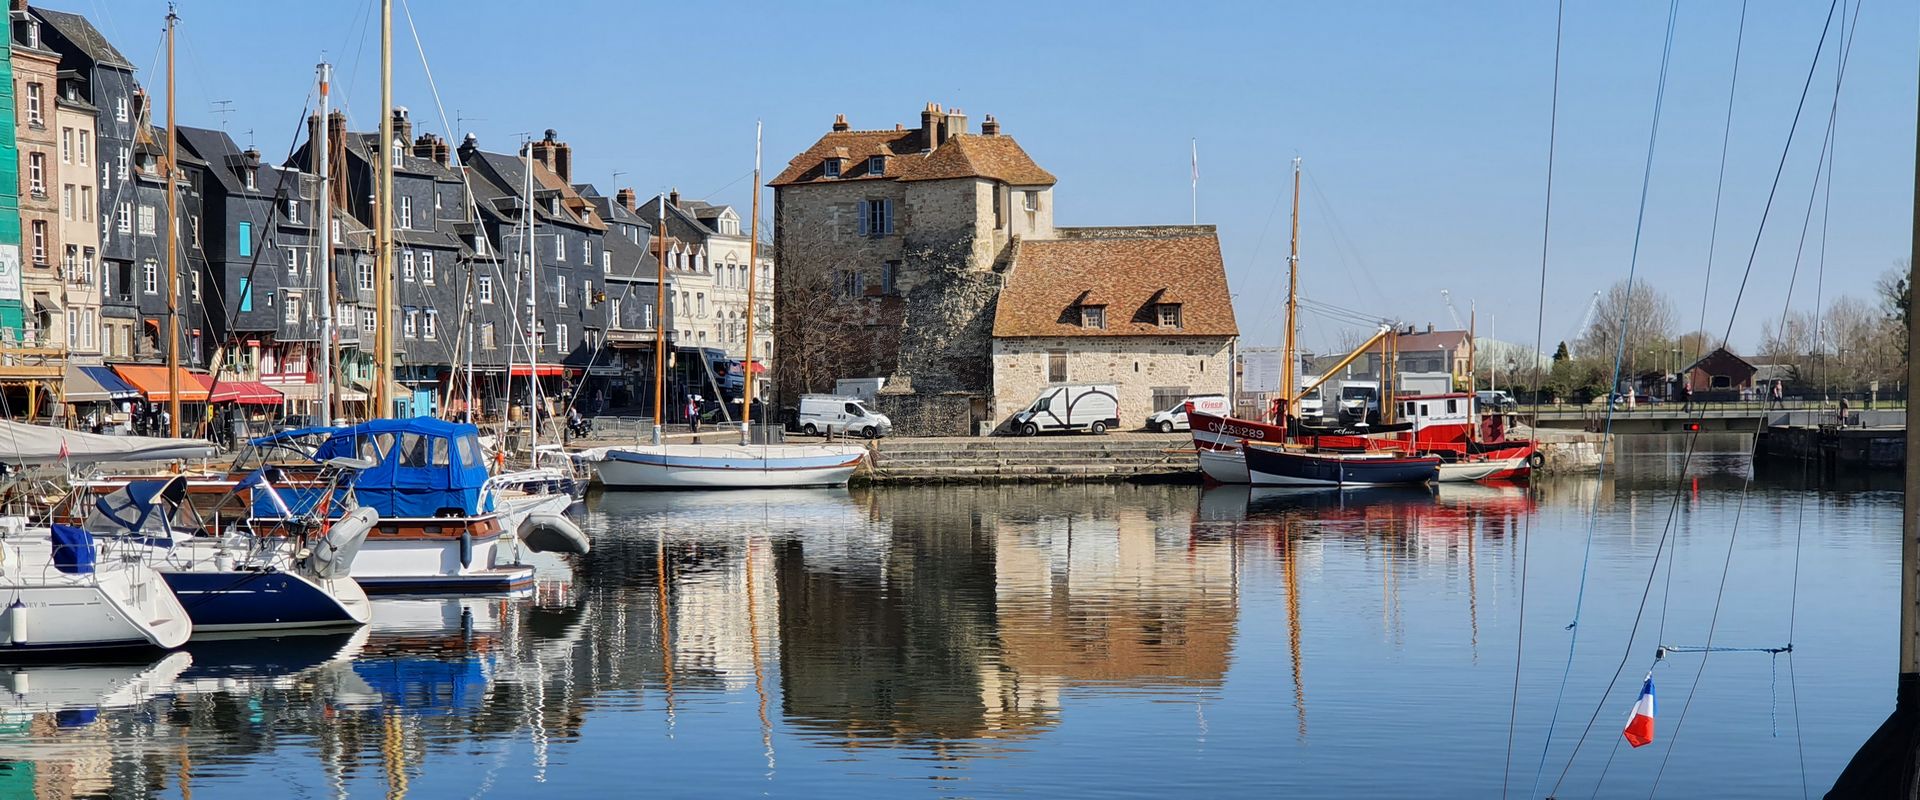 Frankreich: Normandie: Honfleur: Hafen; Fransa: Normandiya: Honfleur: Liman